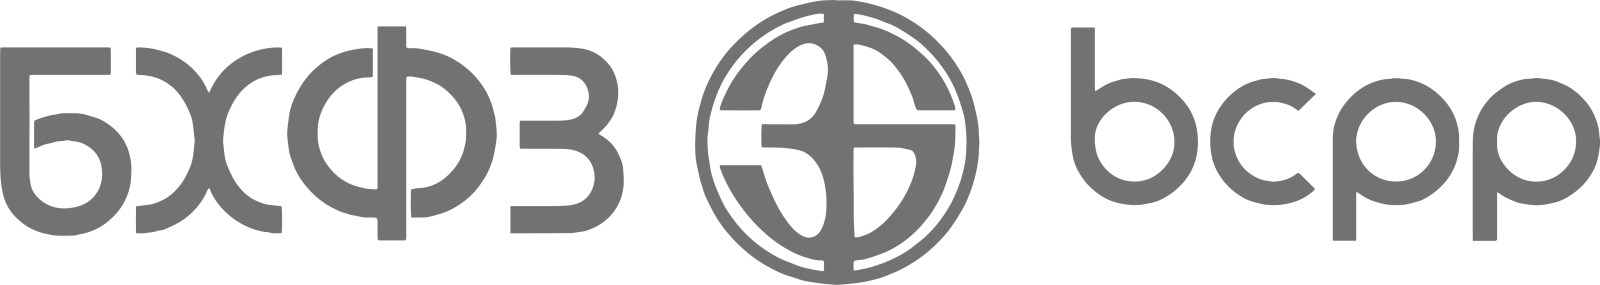 БХВЗ logo